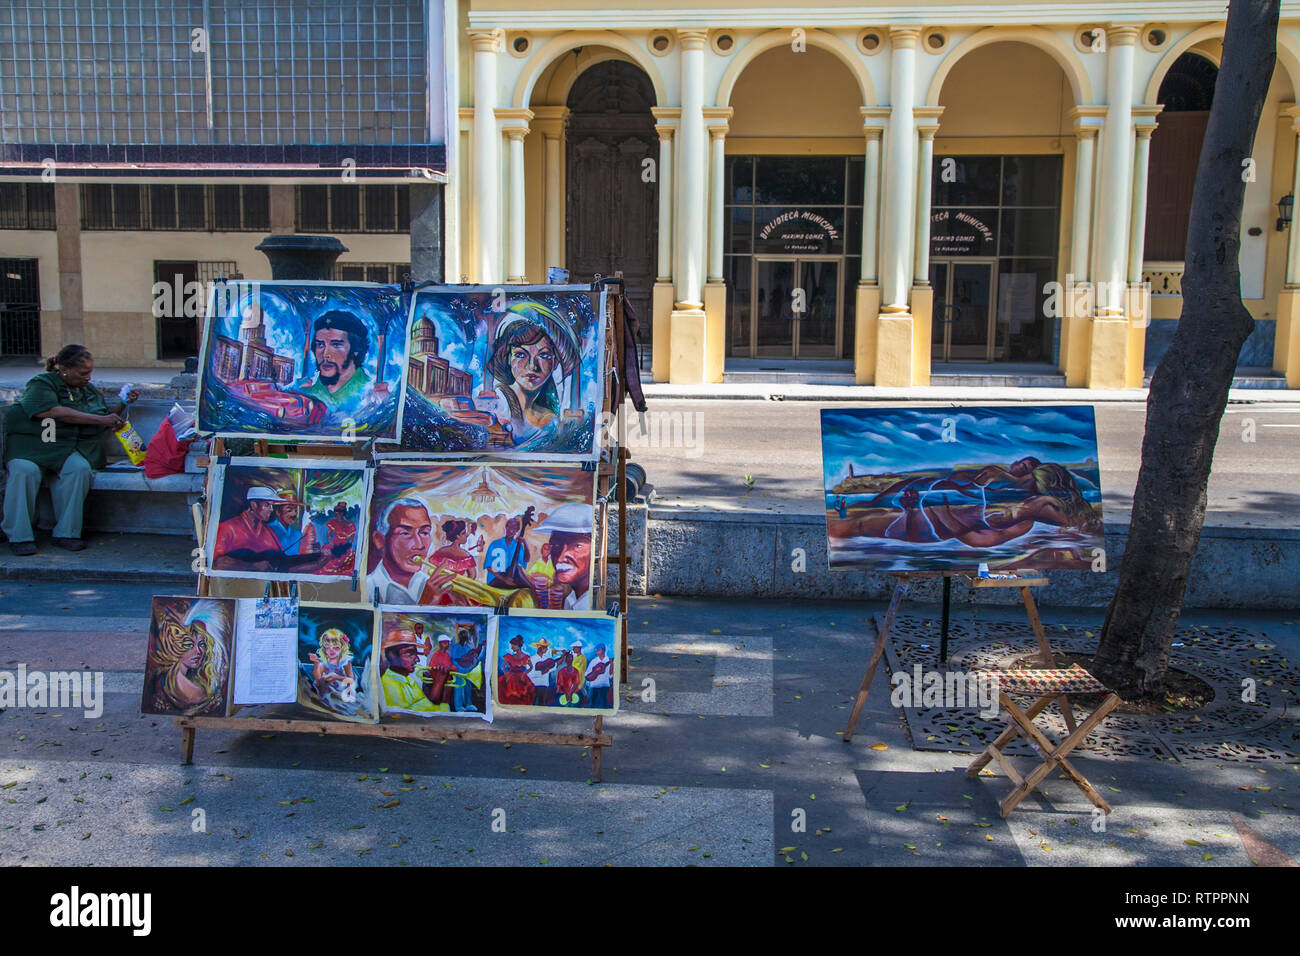 L'Avana, Cuba - 20 Gennaio 2013: una vista delle strade della città con il popolo cubano. Gli artisti cubani presentano i loro lavori sulla strada. Foto Stock